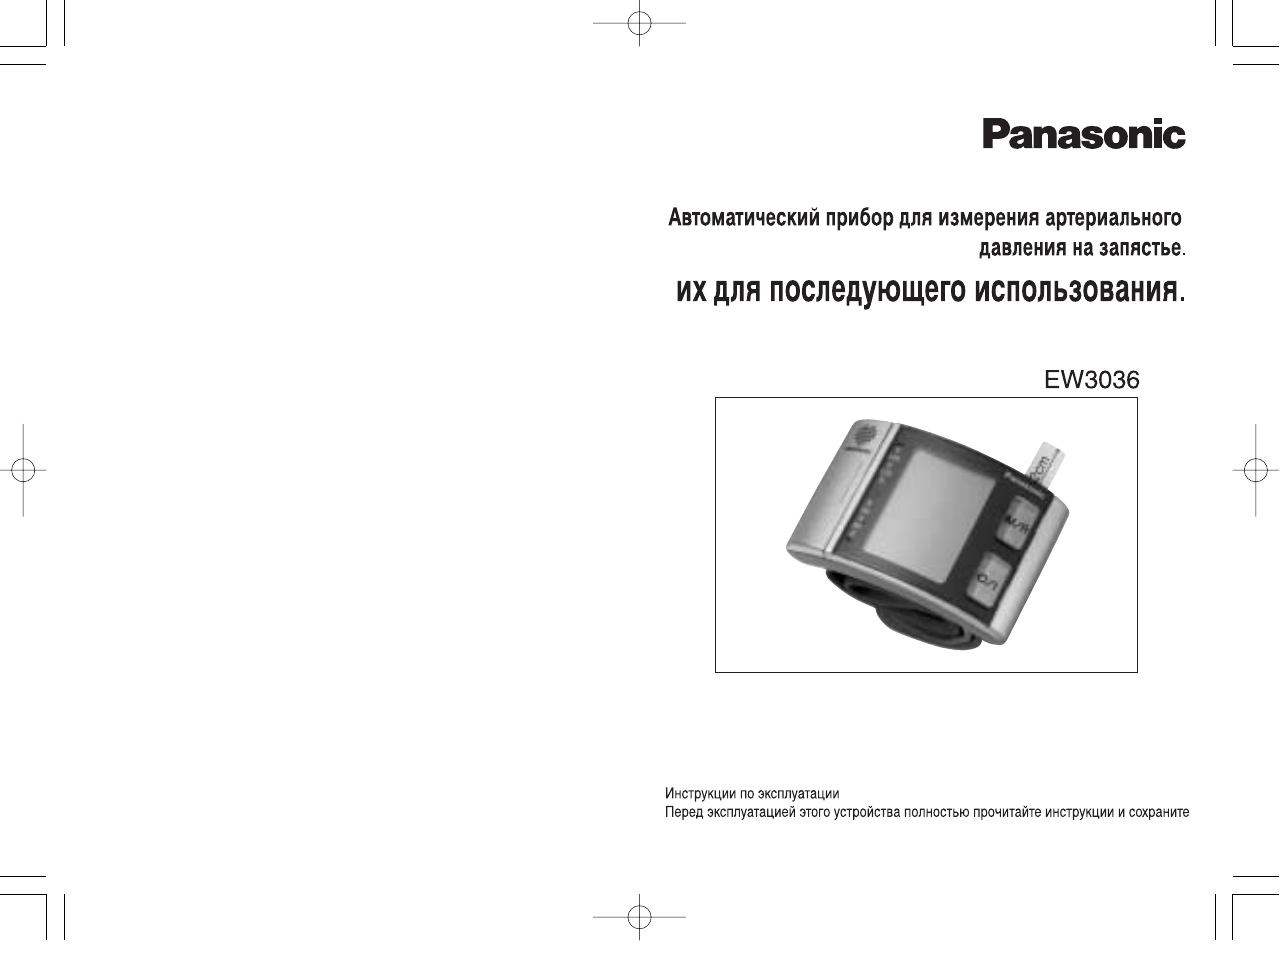 Инструкция по эксплуатации Panasonic EW3036S800 | 13 страниц